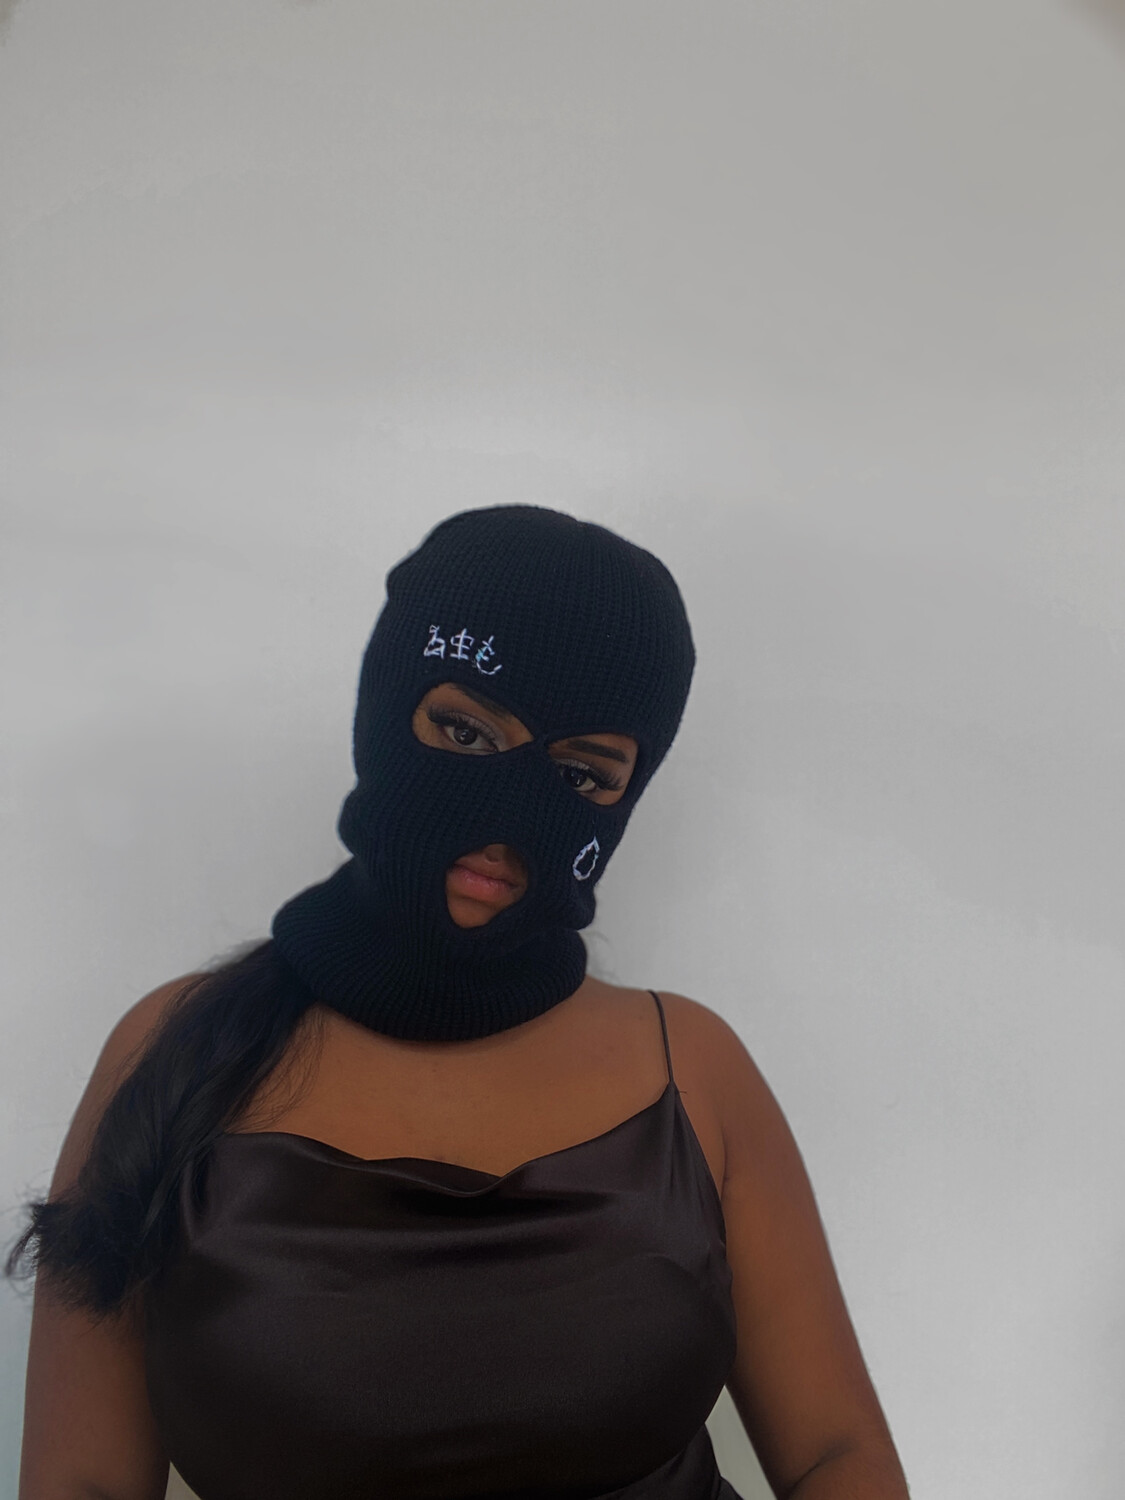 EXCLUSIVE Ski Mask in jet black